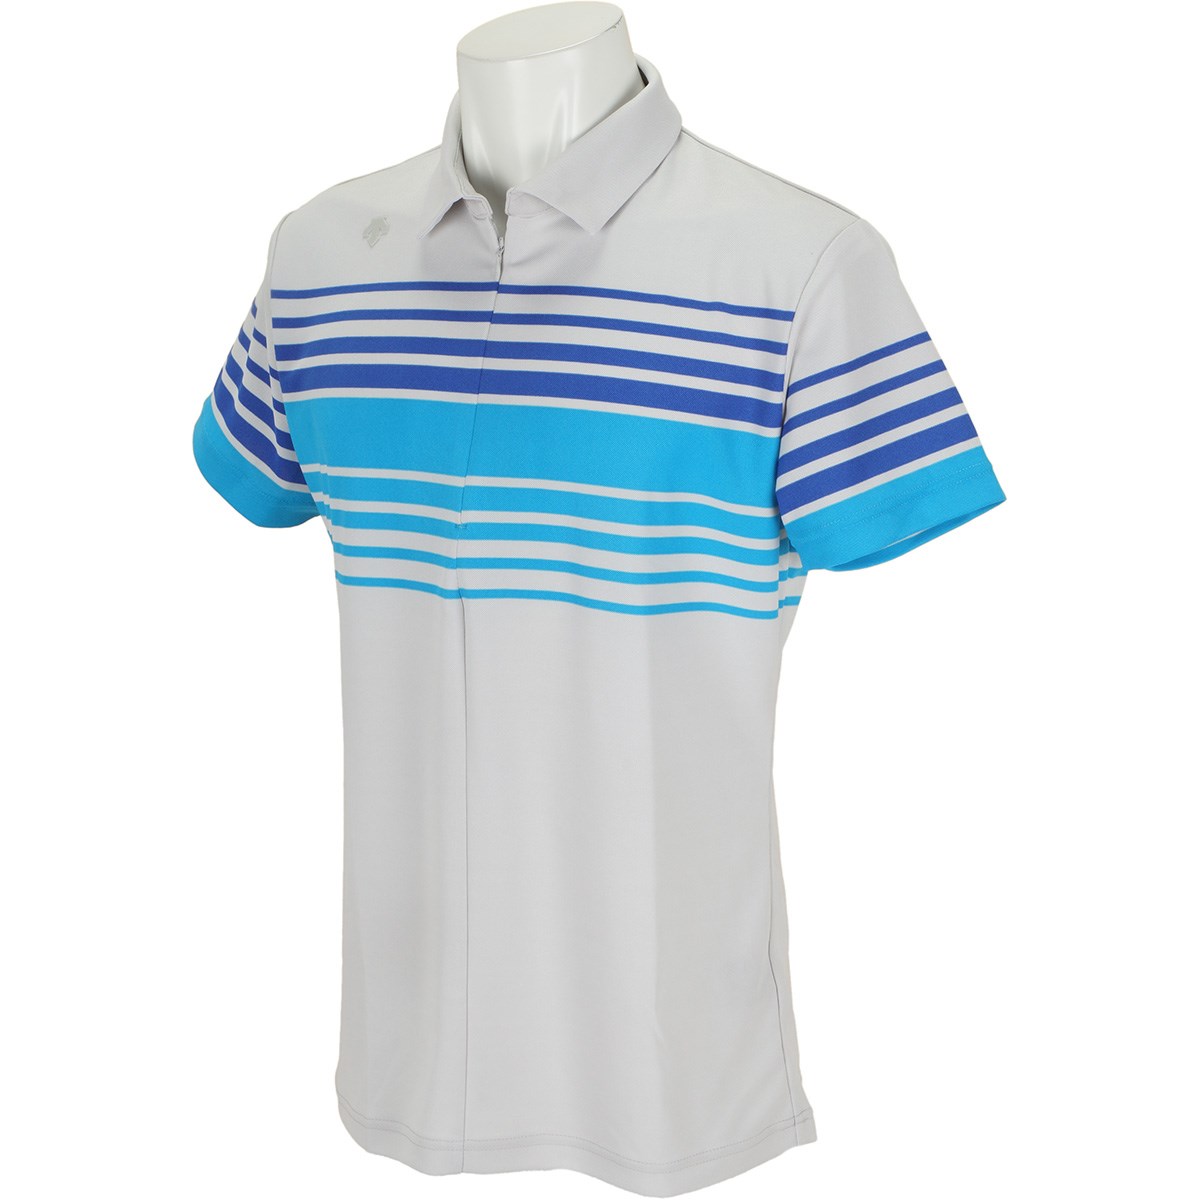 デサントゴルフ(DESCENTE GOLF) パネルボーダープリント 半袖ポロシャツ 